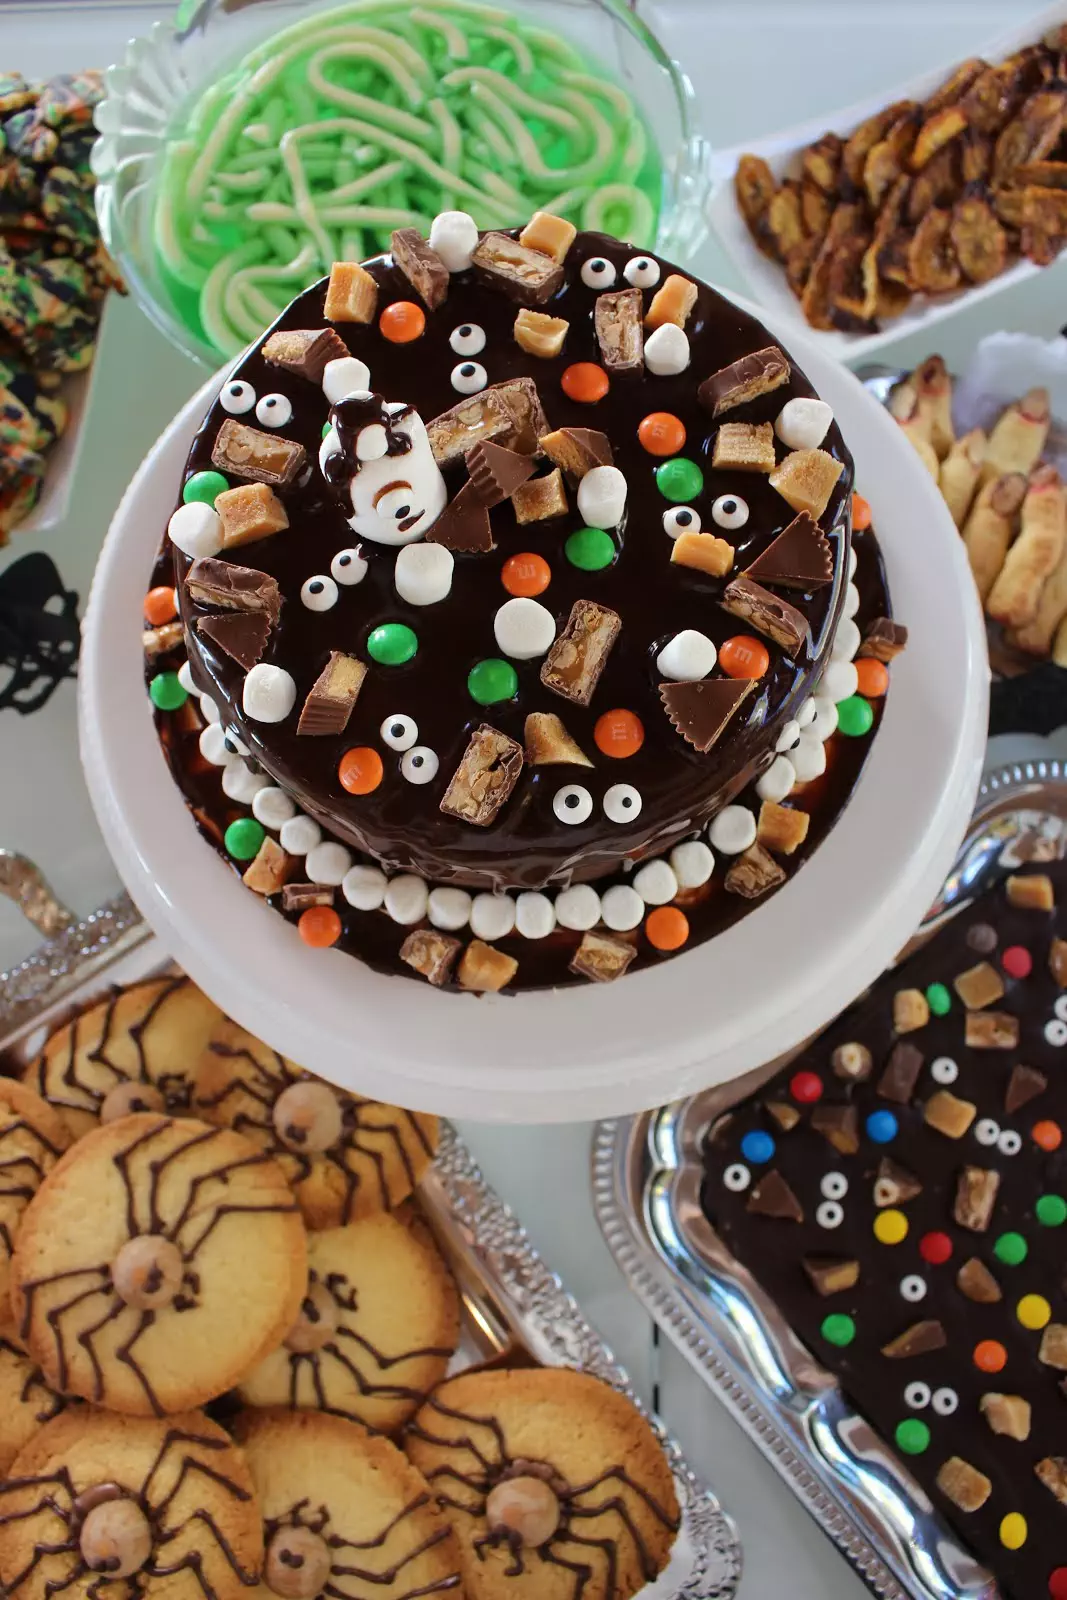 Würmerpudding, Augenschokolade und Halloween Candy Cake... Happy Halloween!